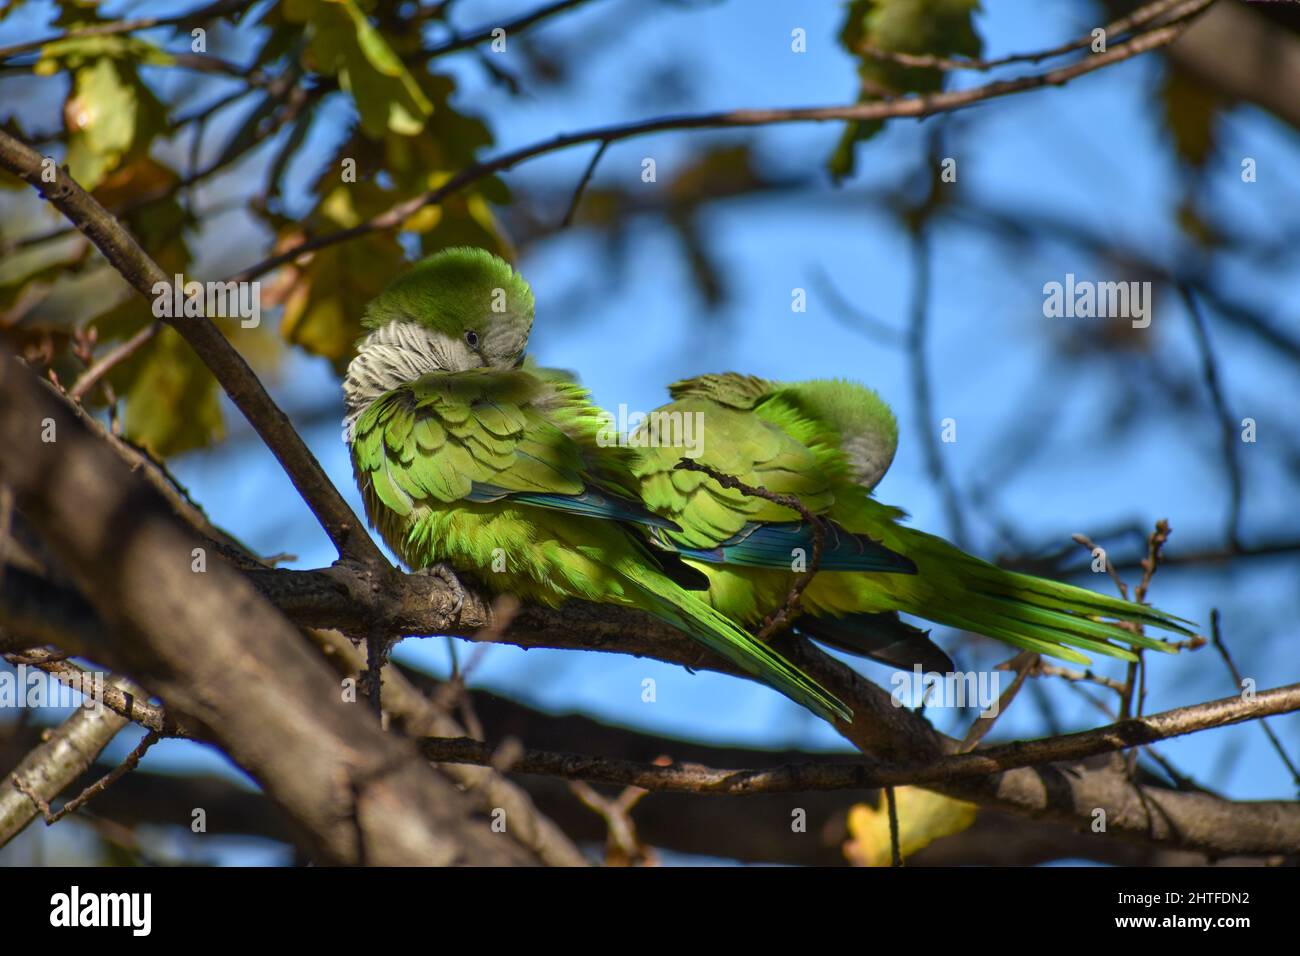 Lindo perico monje, myiopsitta monachus, o loro cuáquero, limpiando sus plumas en un árbol en la ciudad de Buenos Aires Foto de stock